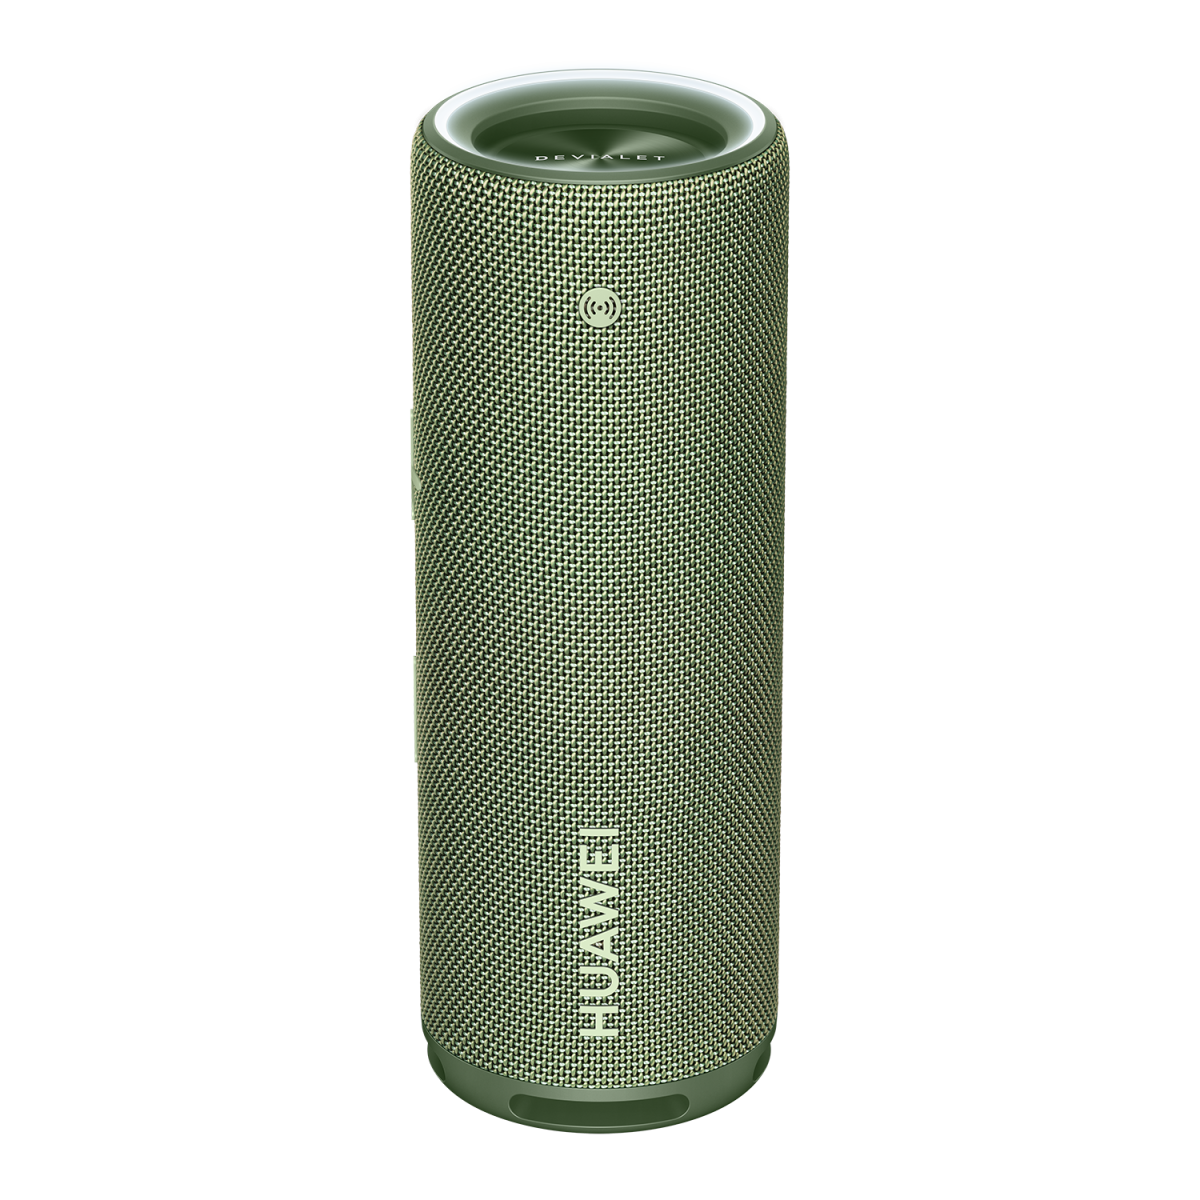 HUAWEI Sound Joy 2022 Portable speaker side